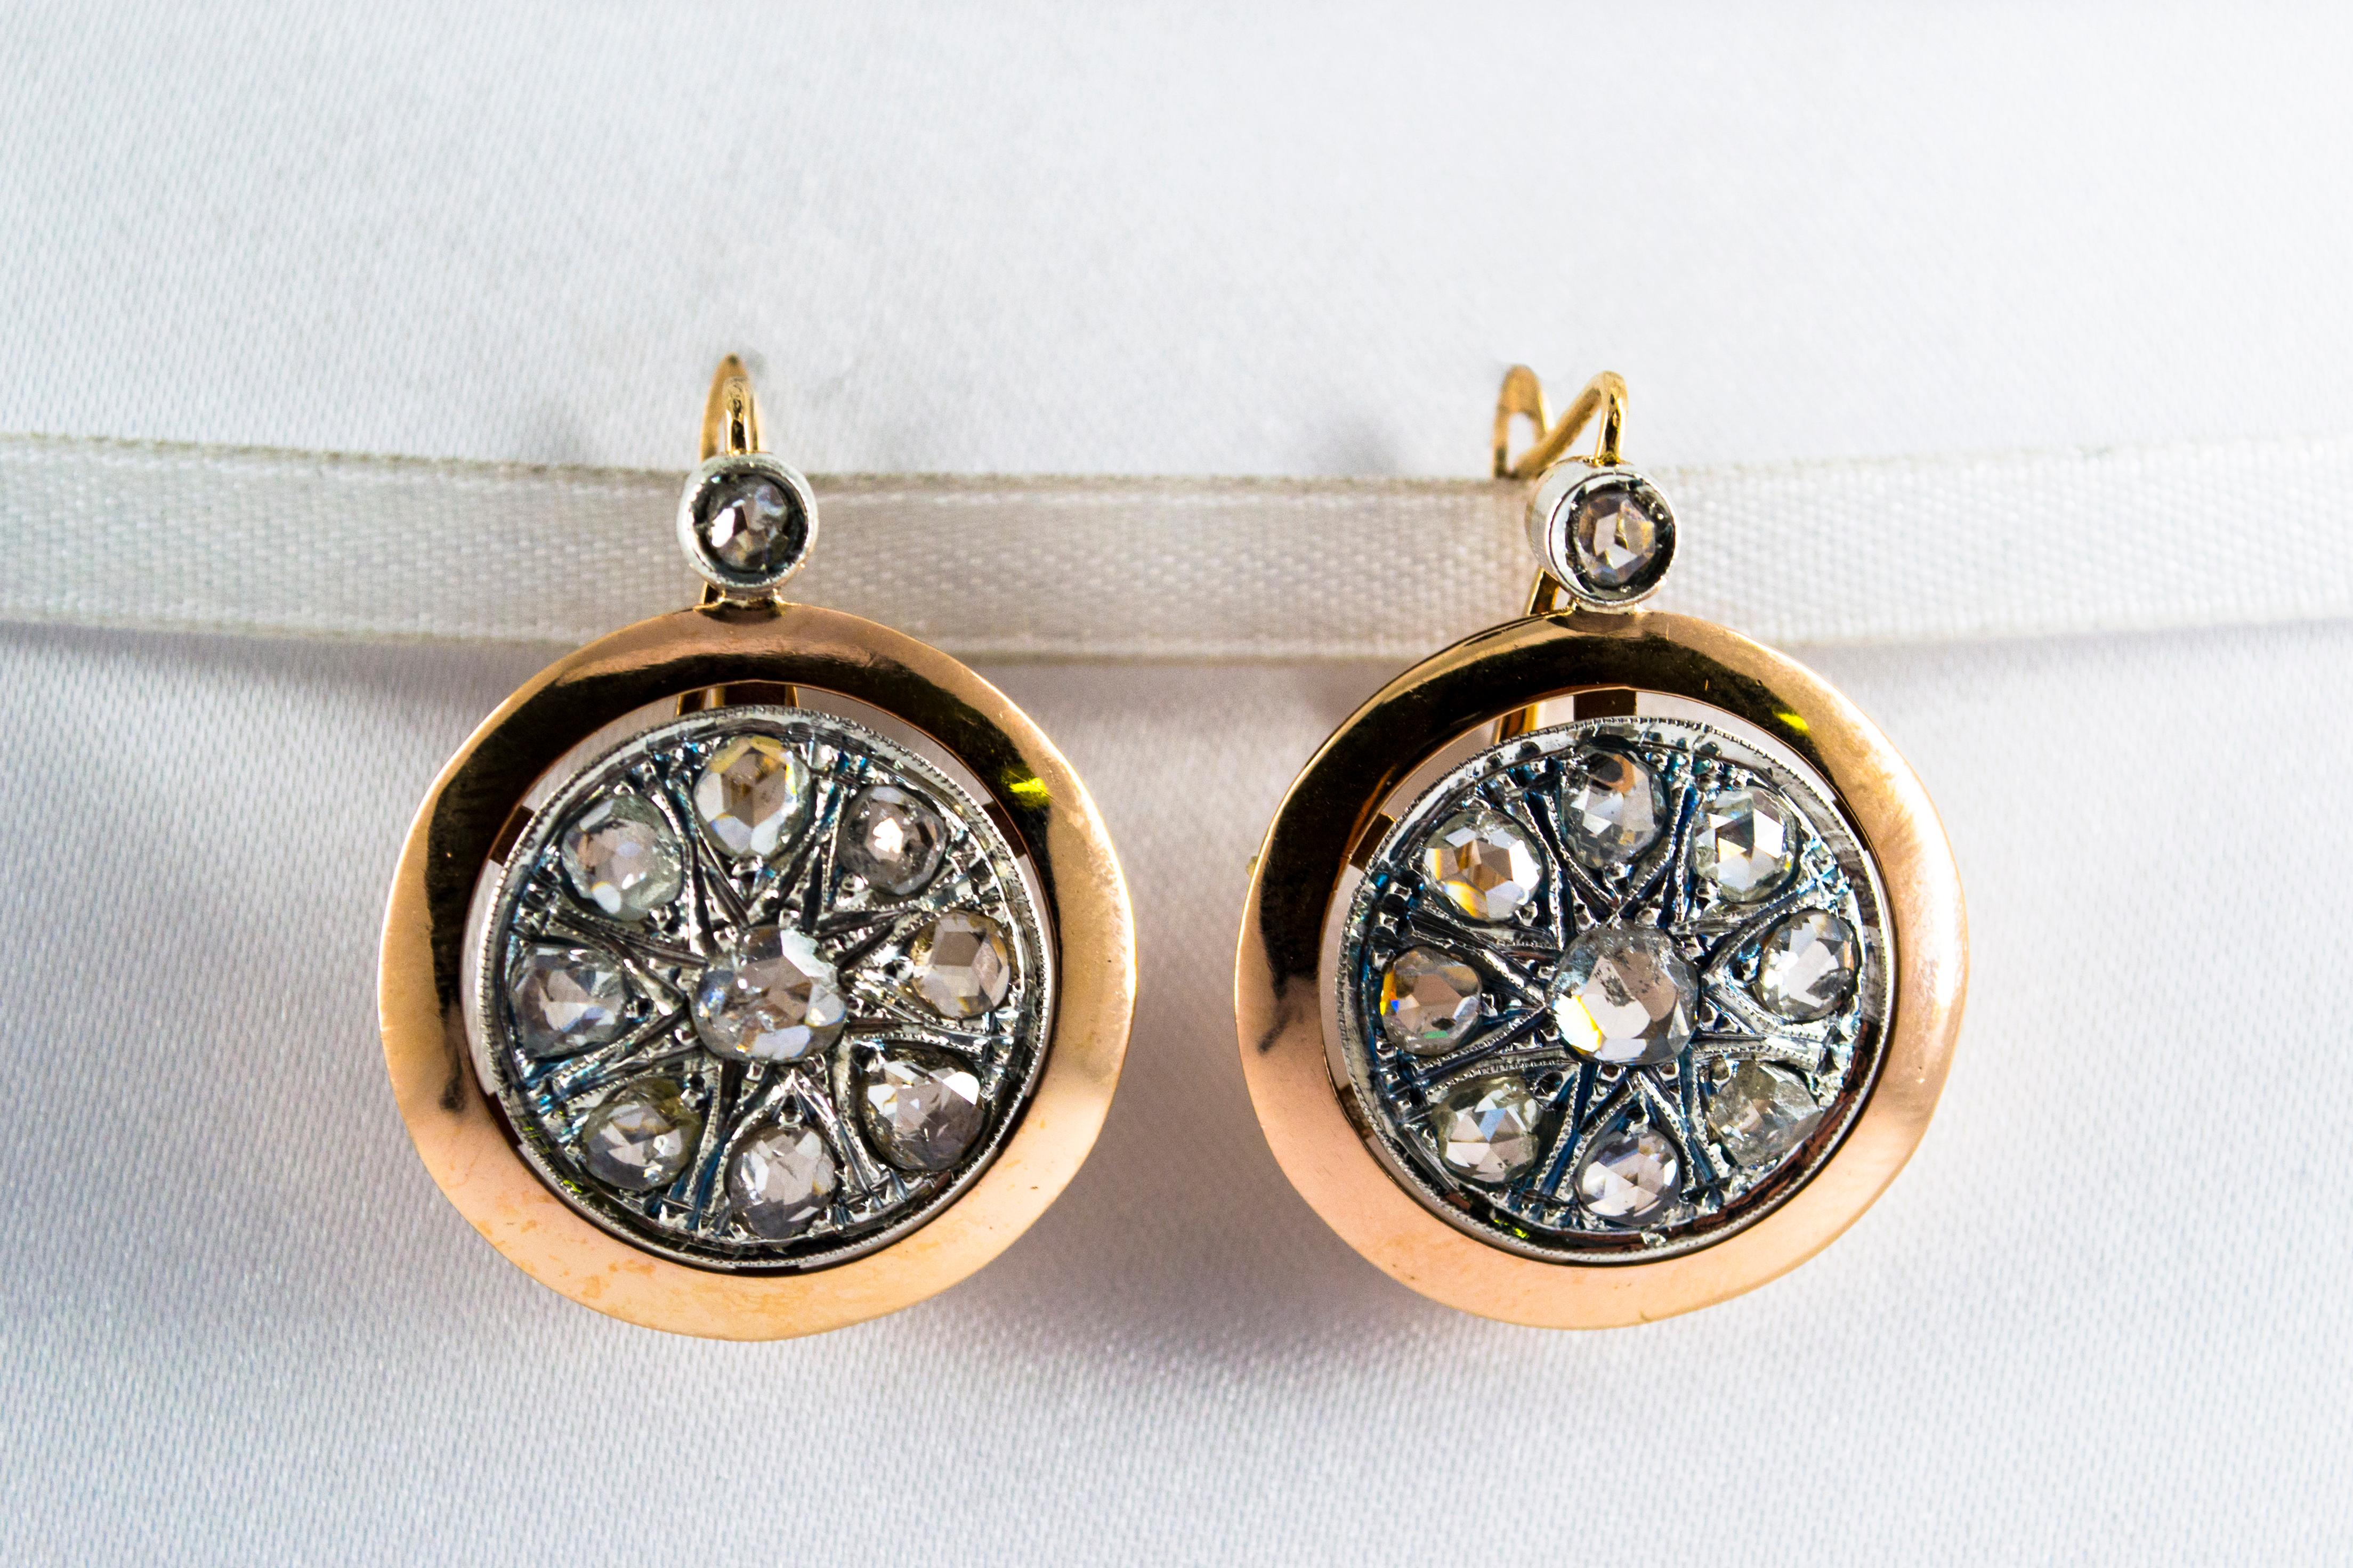 Diese Ohrringe sind aus 14K Gelbgold und Sterling Silber gefertigt.
Diese Ohrringe bestehen aus 3,50 Karat weißen Diamanten (Old European Cut).
Diese Ohrringe sind vom Stil der Renaissance inspiriert.
Alle unsere Ohrringe haben Stifte für gepiercte